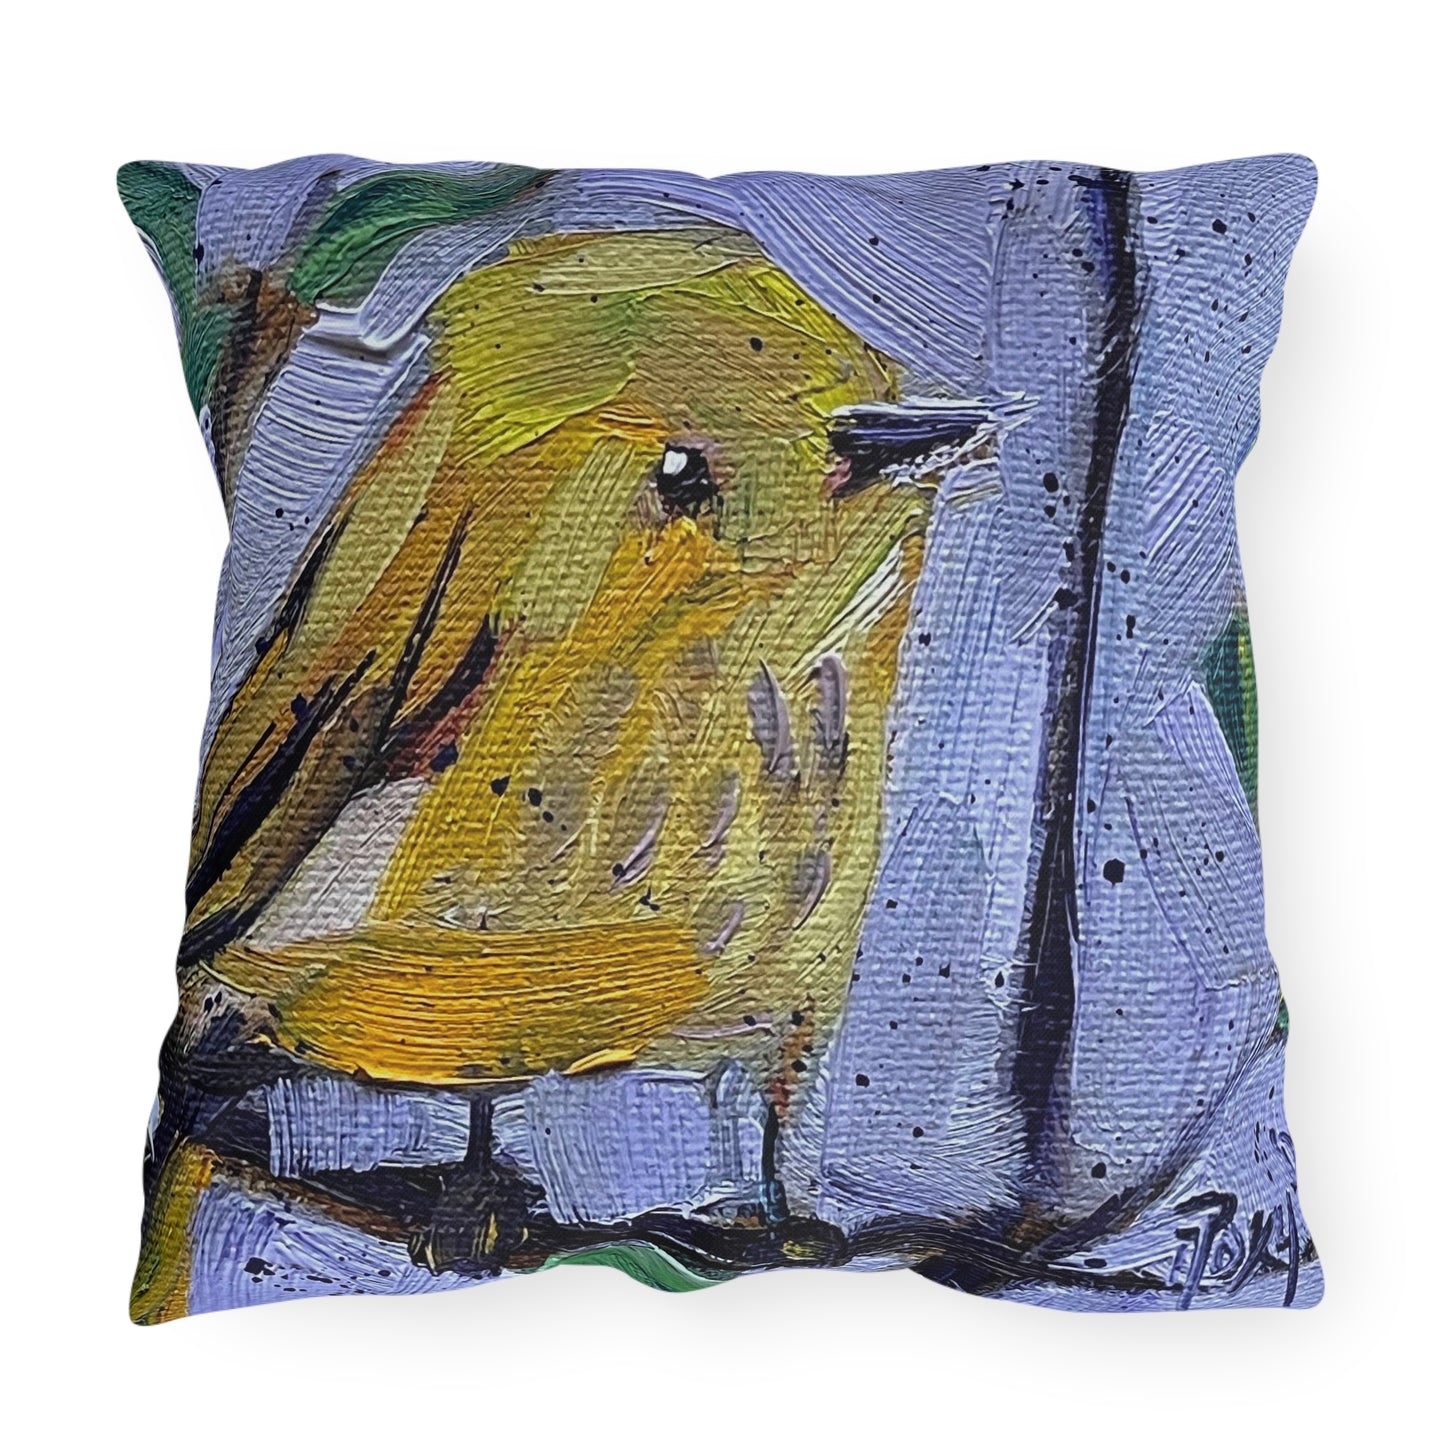 Winsome Little Warbler Outdoor Pillows